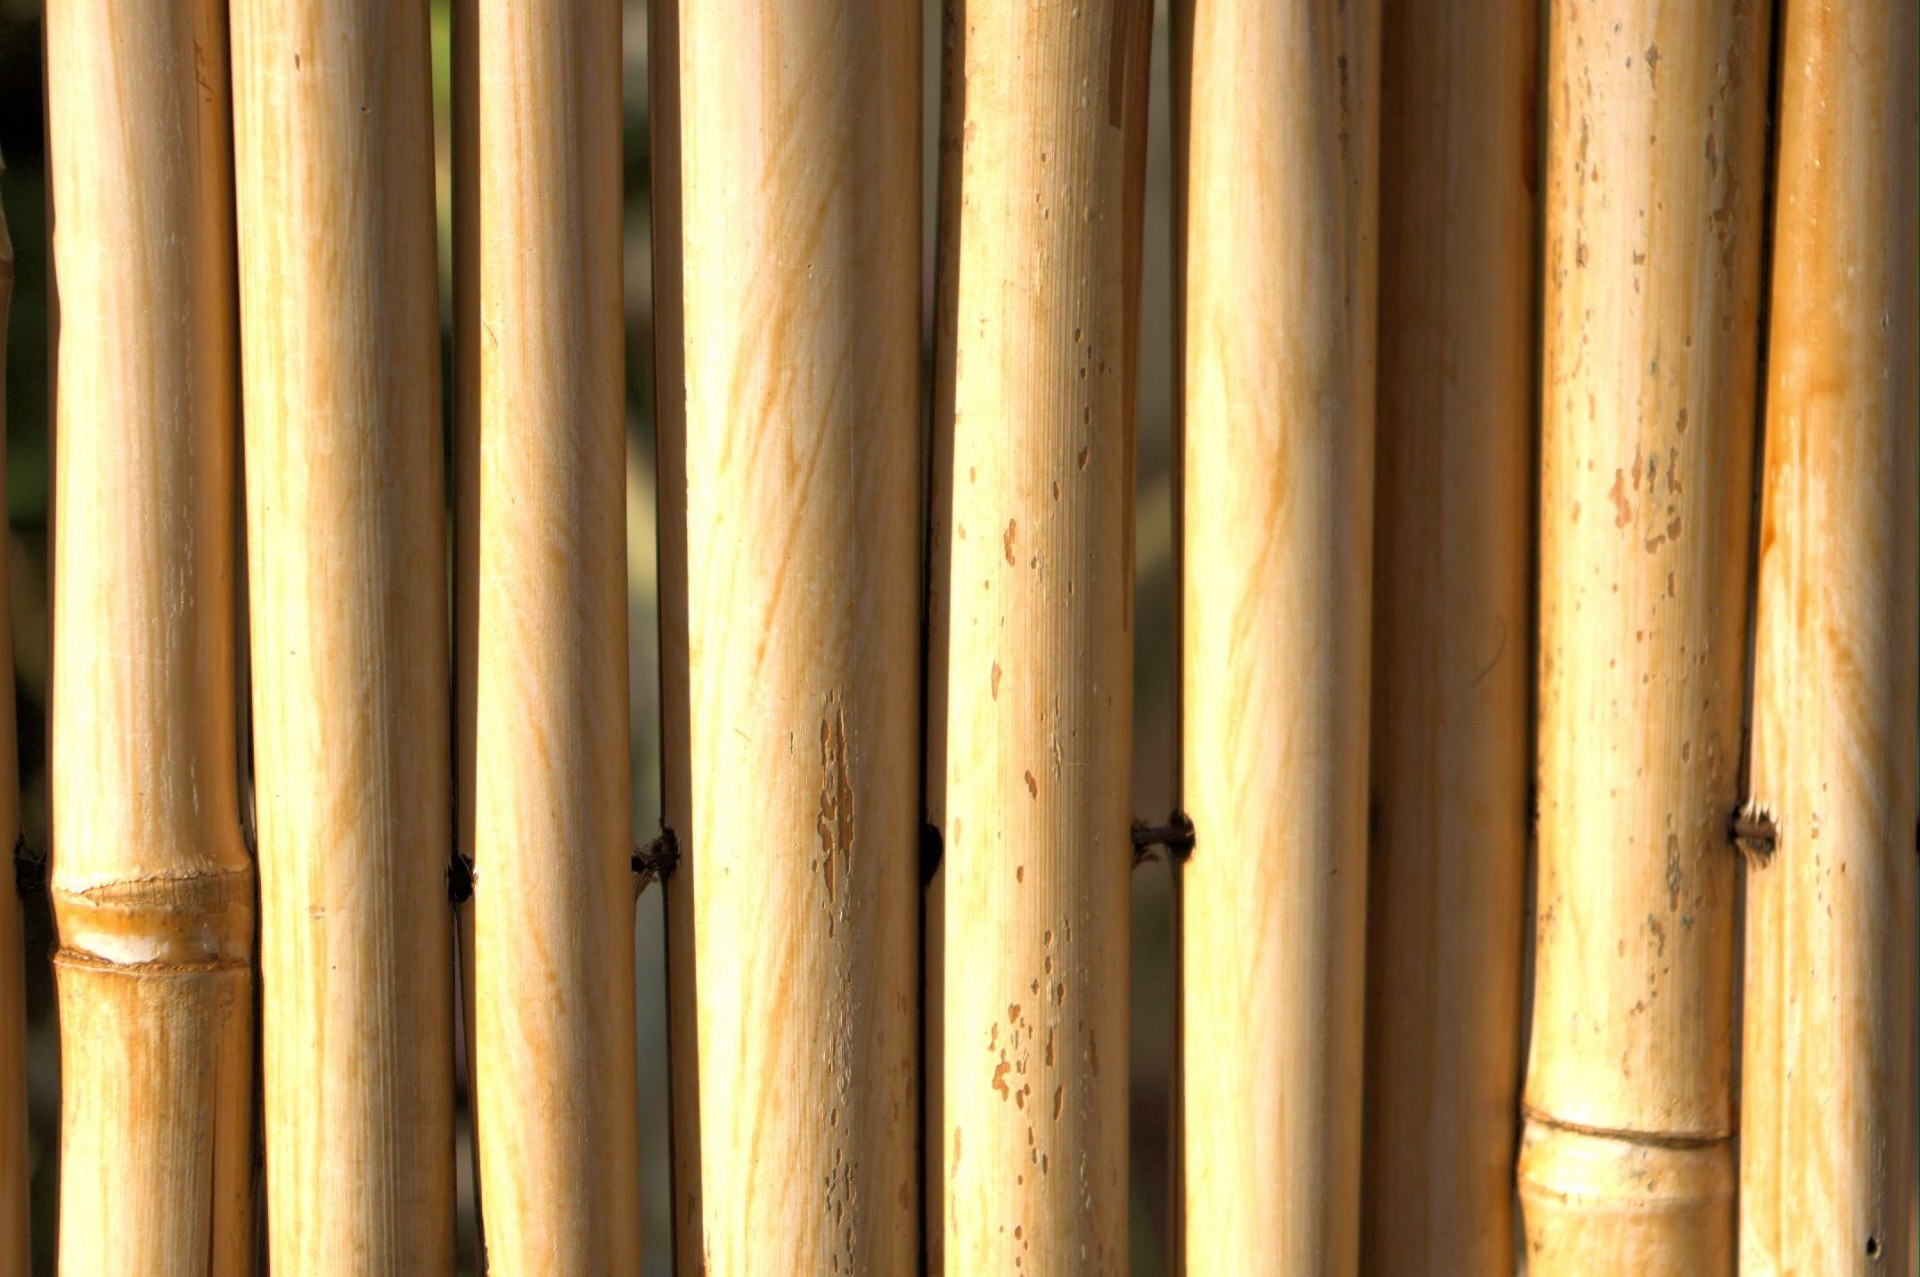 Bamboo Fence Background